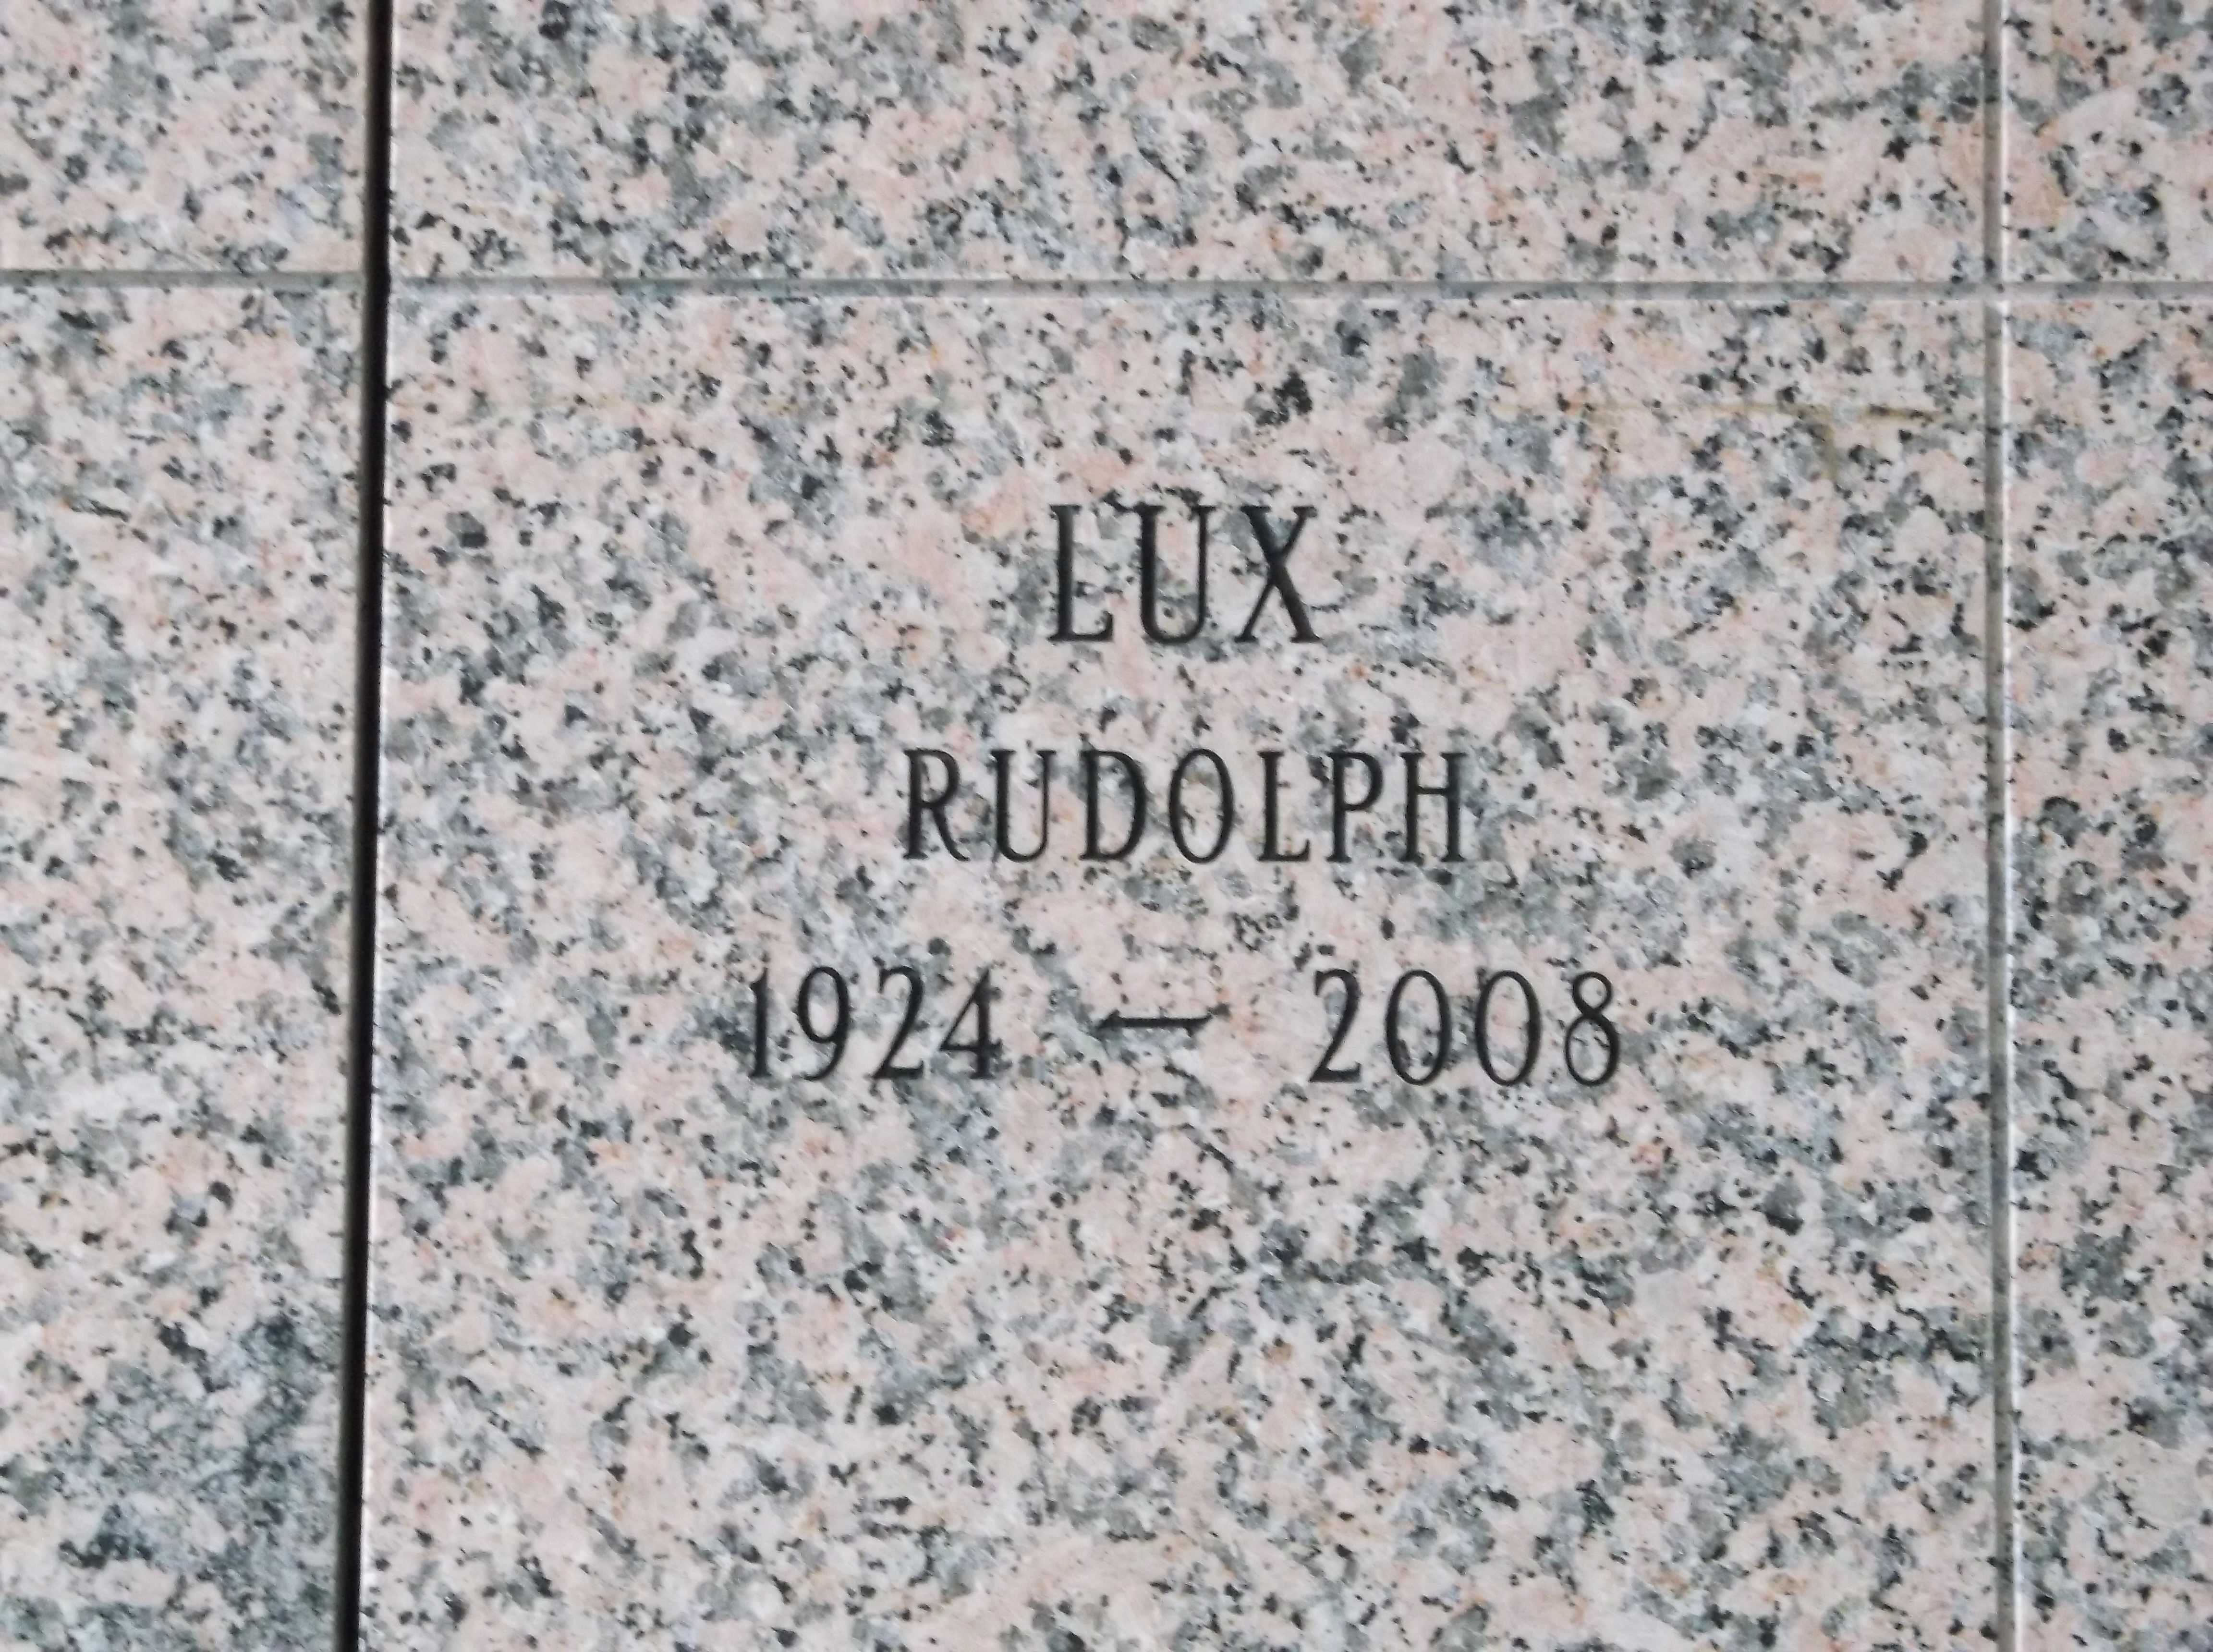 Rudolph Lux